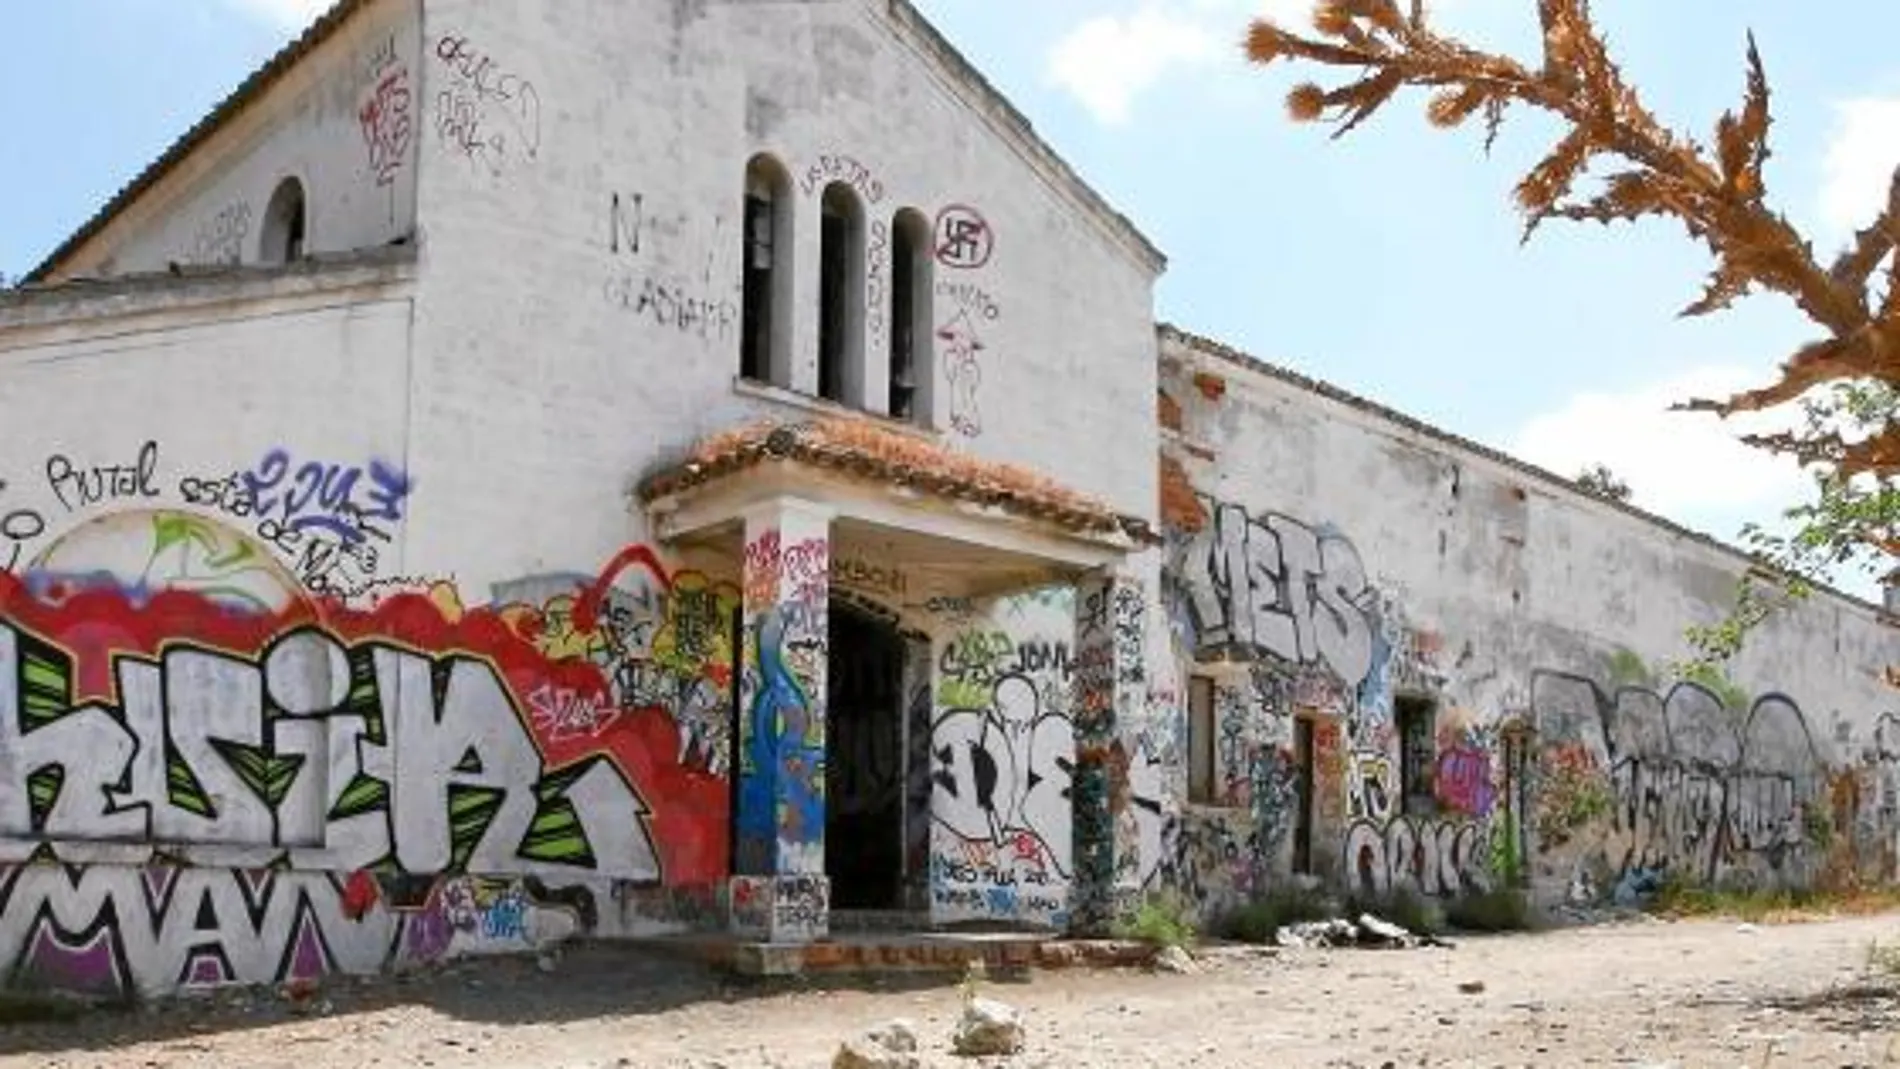 Los jóvenes organizan fiestas ilegales en esta finca abandonada de Getafe desde hace años